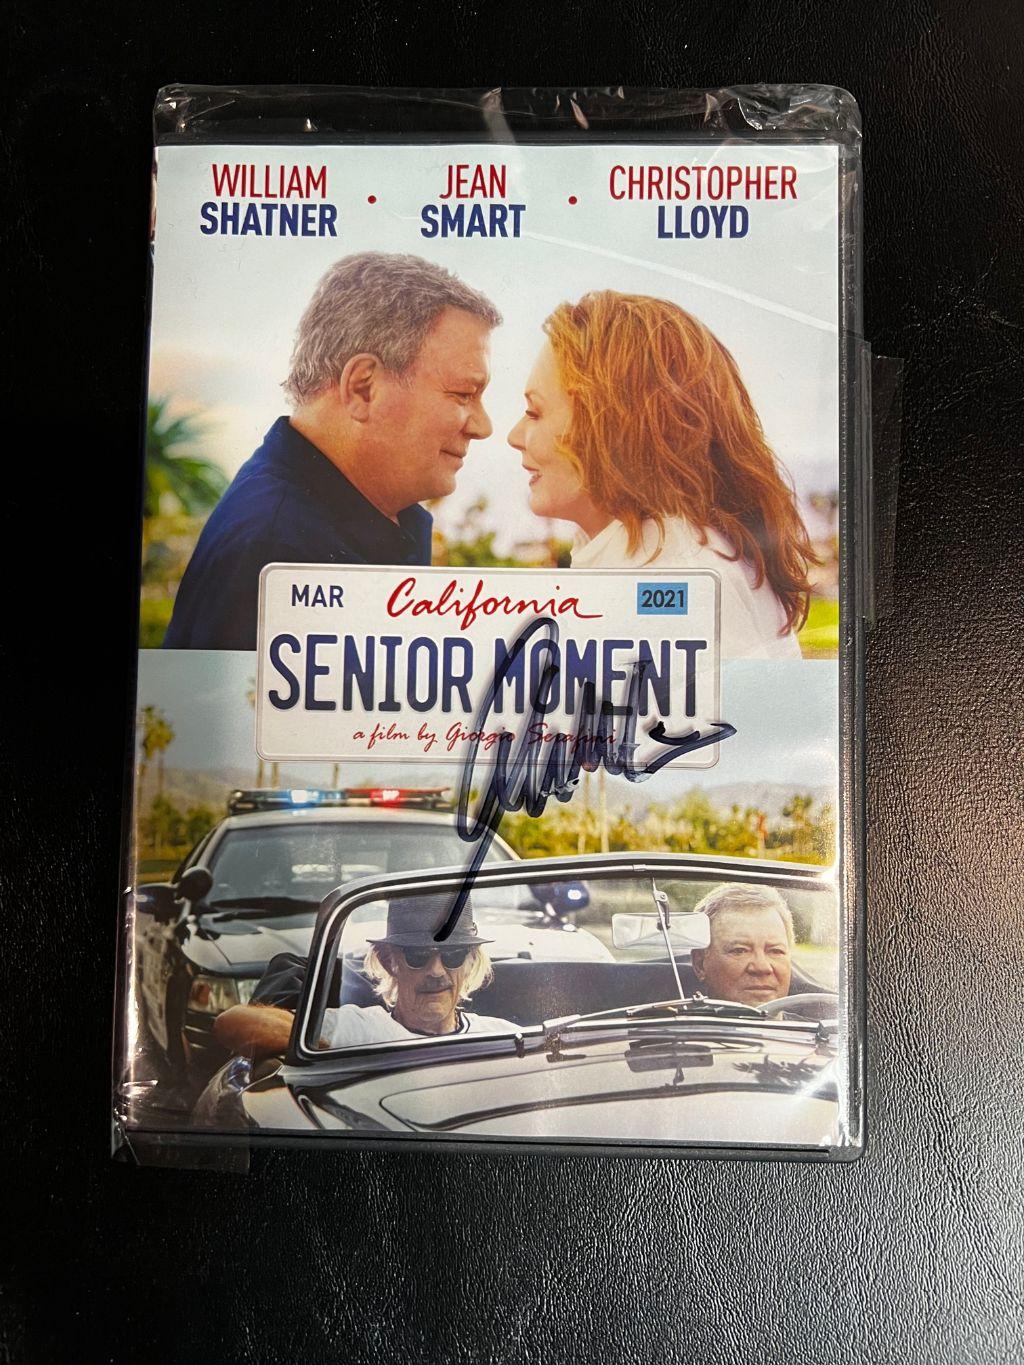 Senior Moment DVD - signed by Mr. Shatner